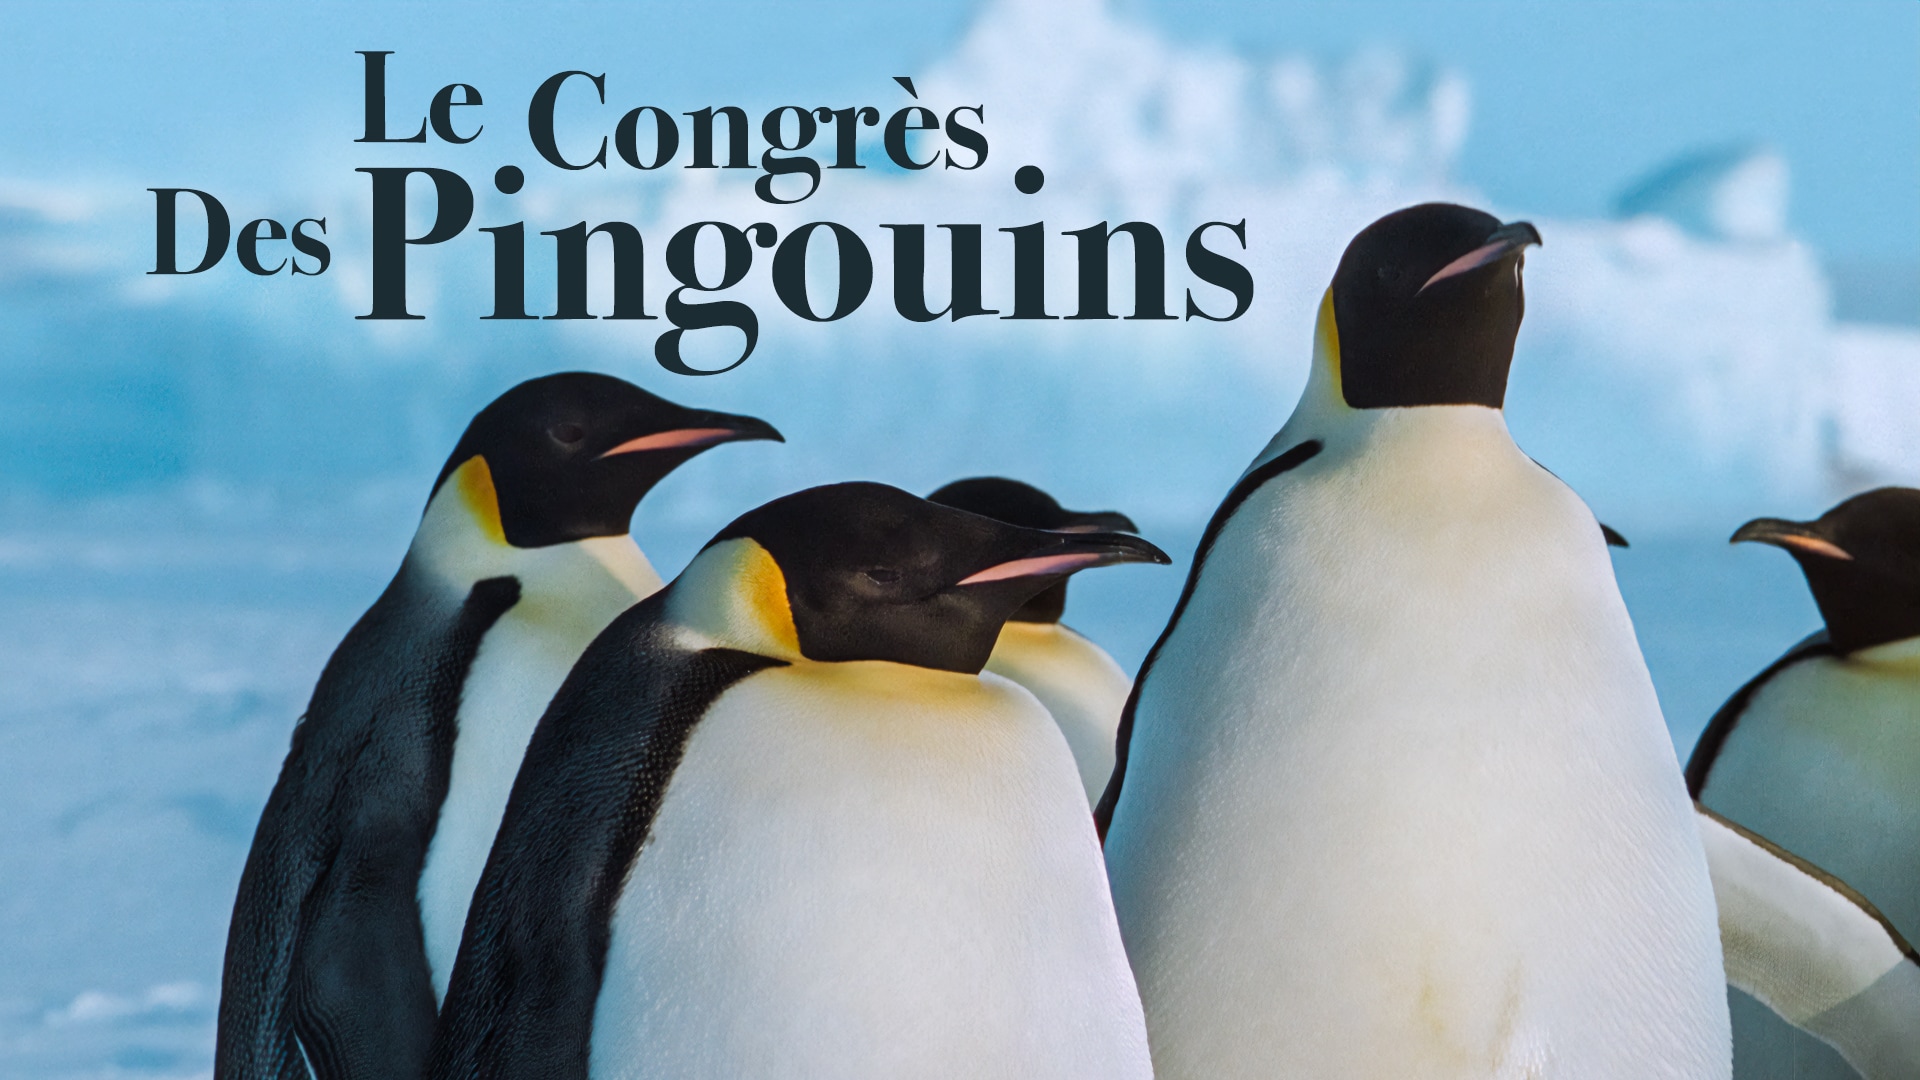 Le congrès des pingouins